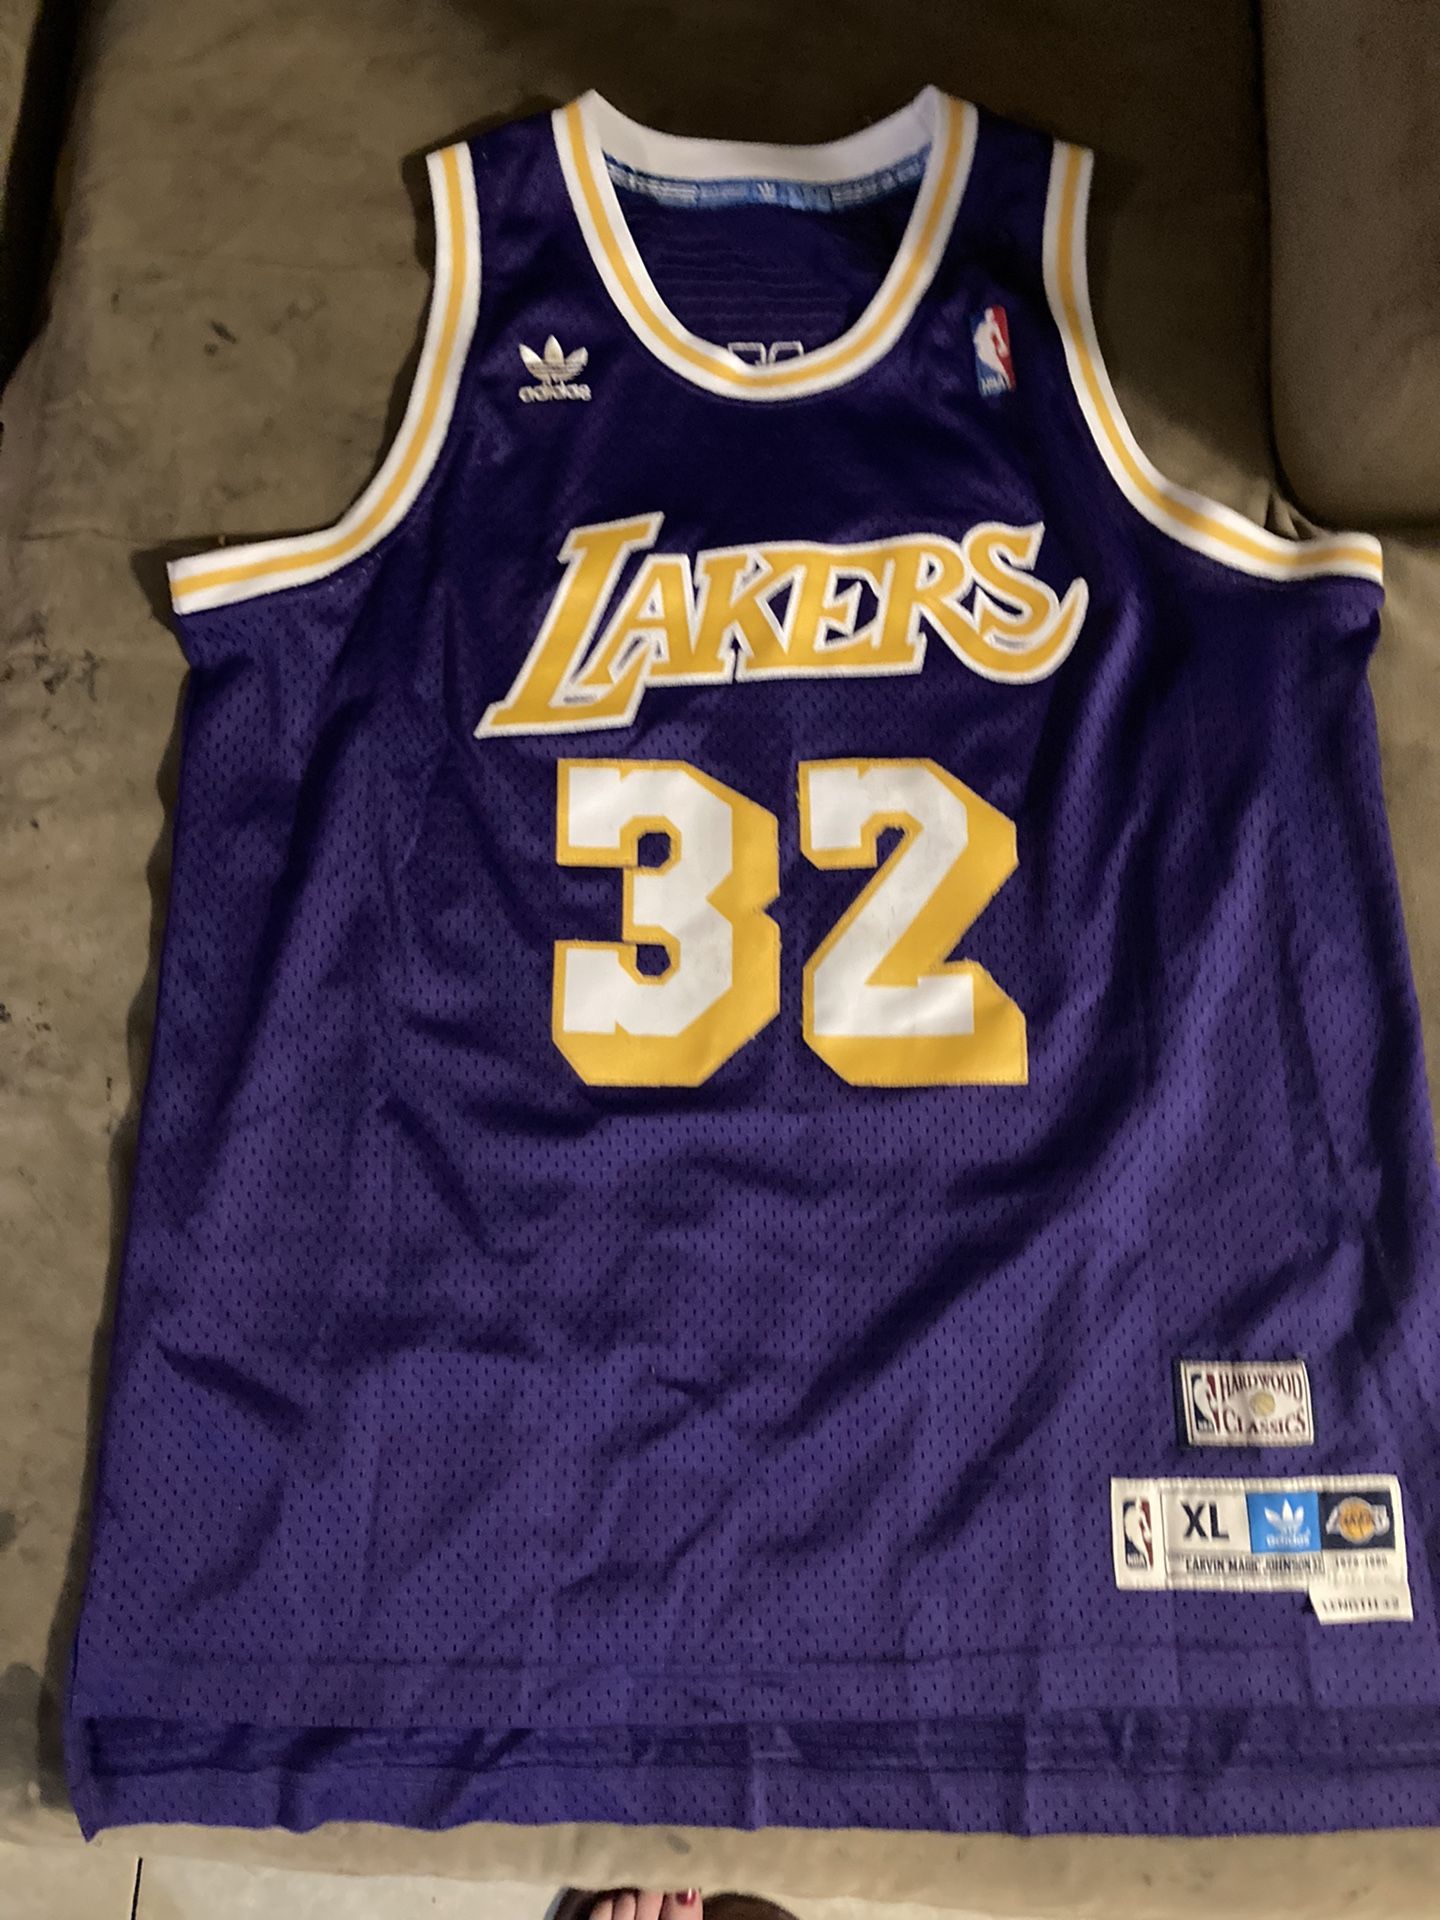 Lakers #32 Johnson jersey